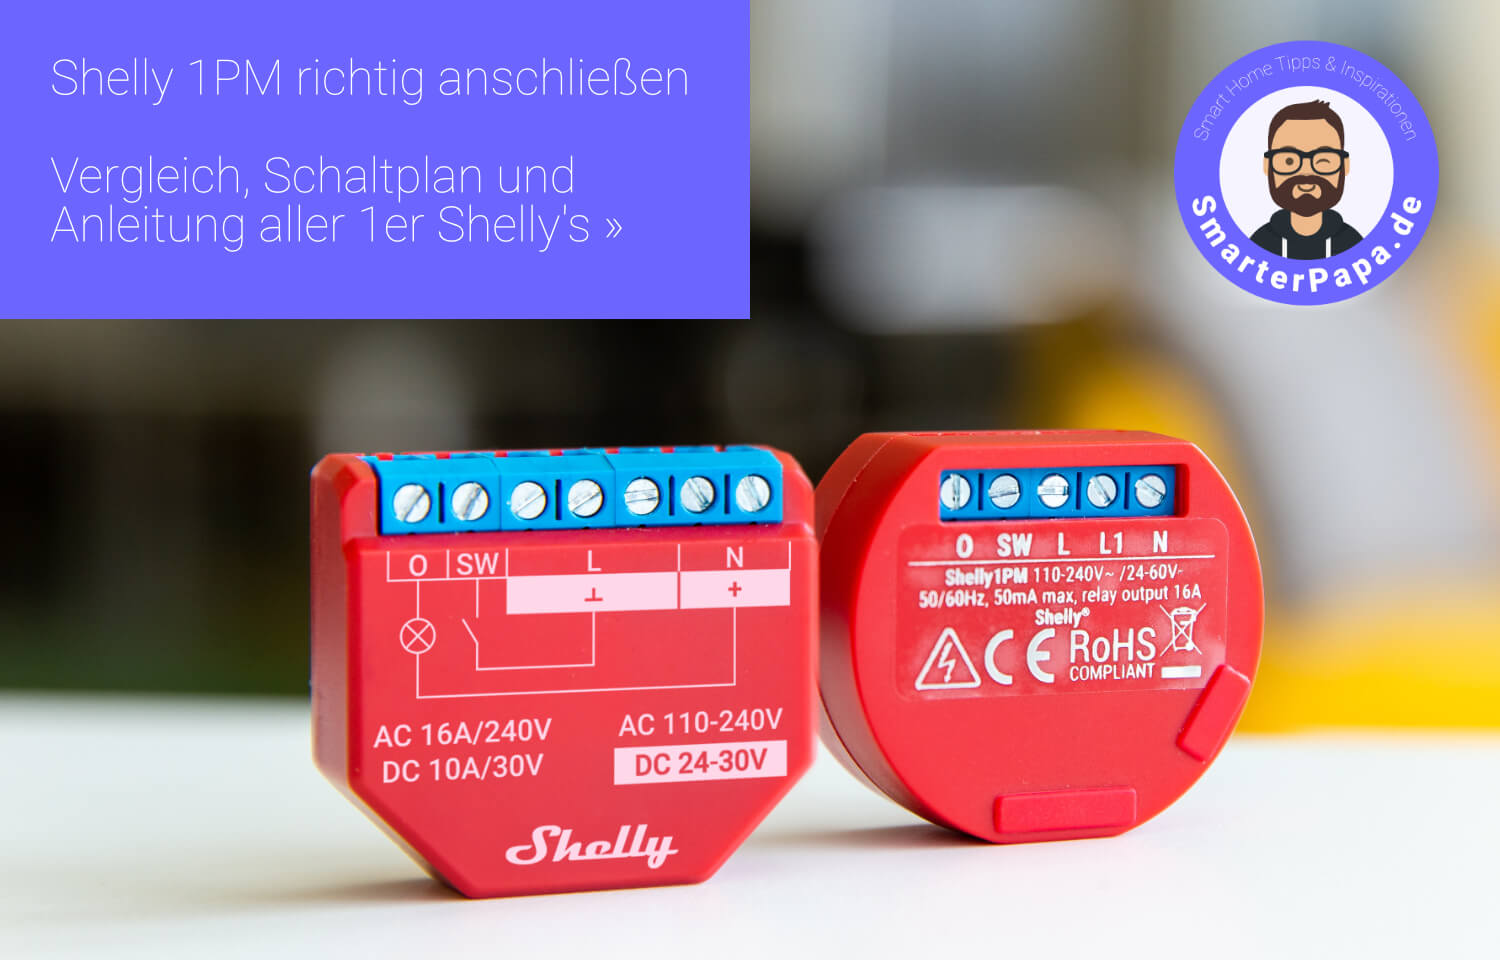 Shelly Plus 1PM, WLAN & Bluetooth Relais Schalter mit Strommessung, Smart  Home Hausautomation, Funktioniert mit Alexa & Google Home, iOS- &  Android-App, Kein Hub erforderlich